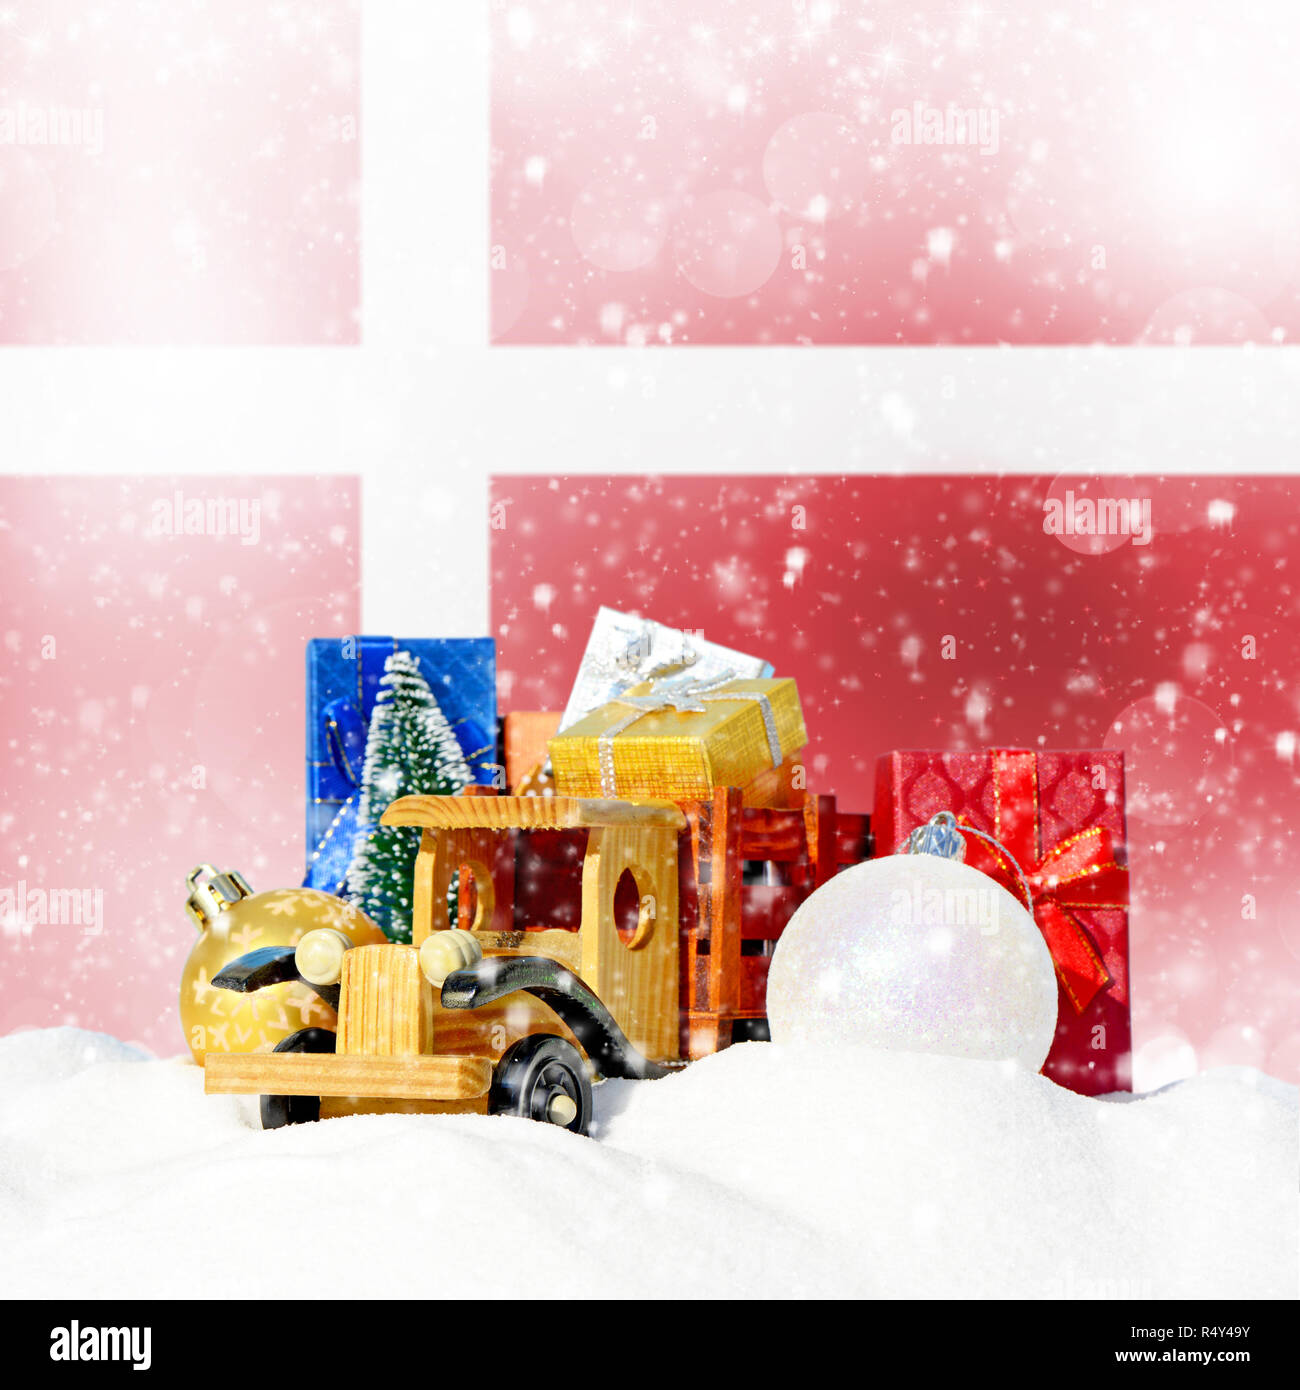 Weihnachten Hintergrund. Spielzeug-LKW mit Geschenken, Neues Jahr Tanne, Kugeln im Schneetreiben und dänische Flagge Stockfoto